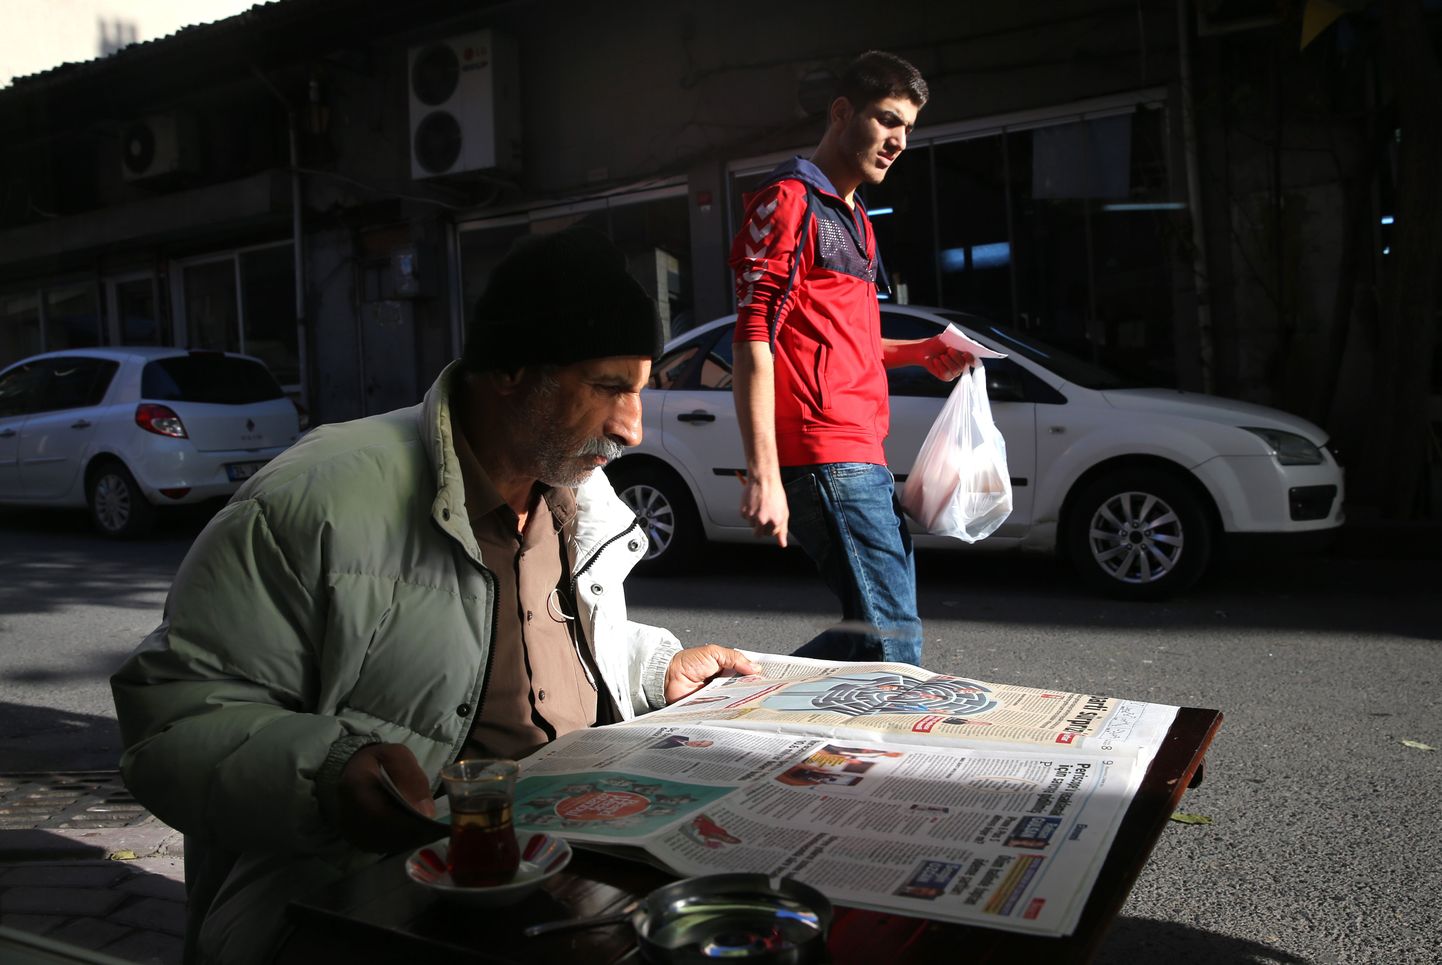 Türgi mees täna valimiste kohta lehest lugemas. Foto on tehtud Istanbulis.